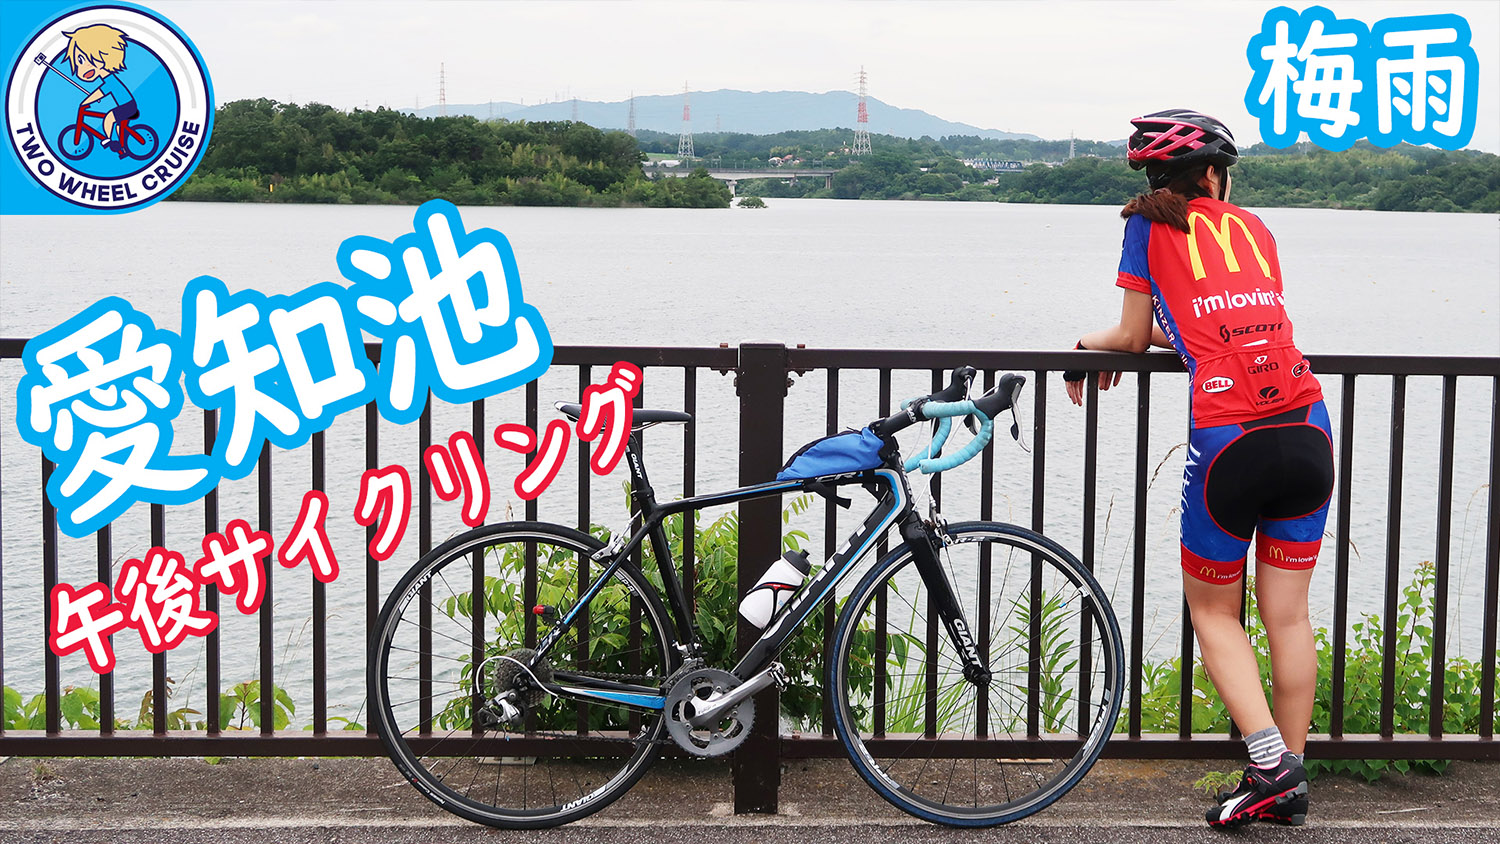 愛知池サイクリングロード aichi ike cycling path japan